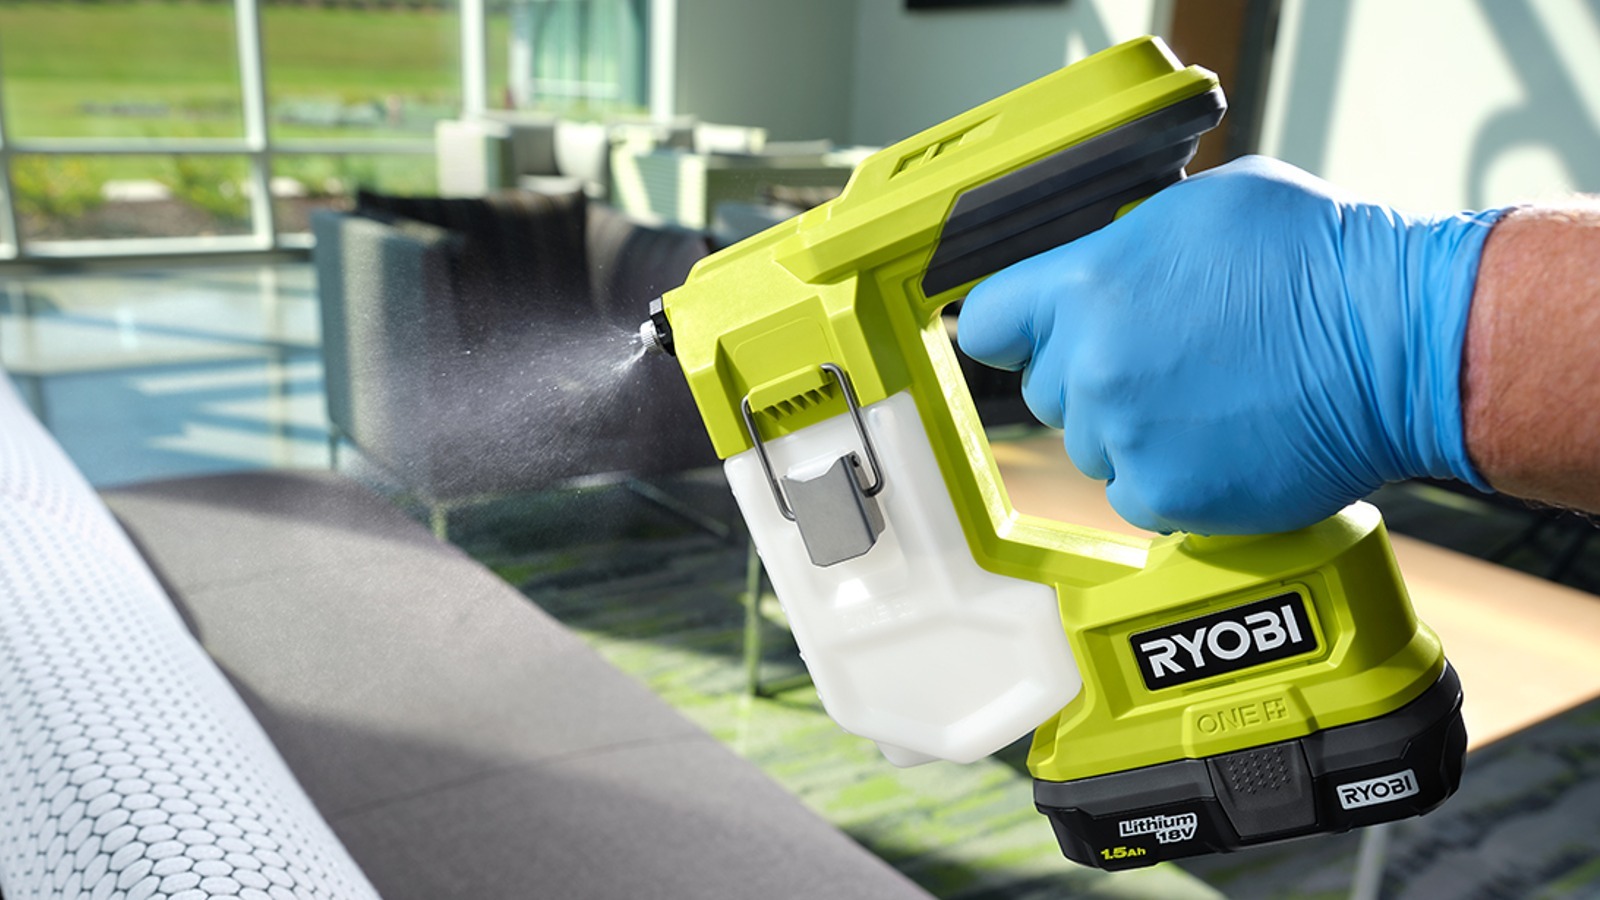 Esta herramienta Ryobi es imprescindible para una limpieza profunda de su casa, automóvil y más